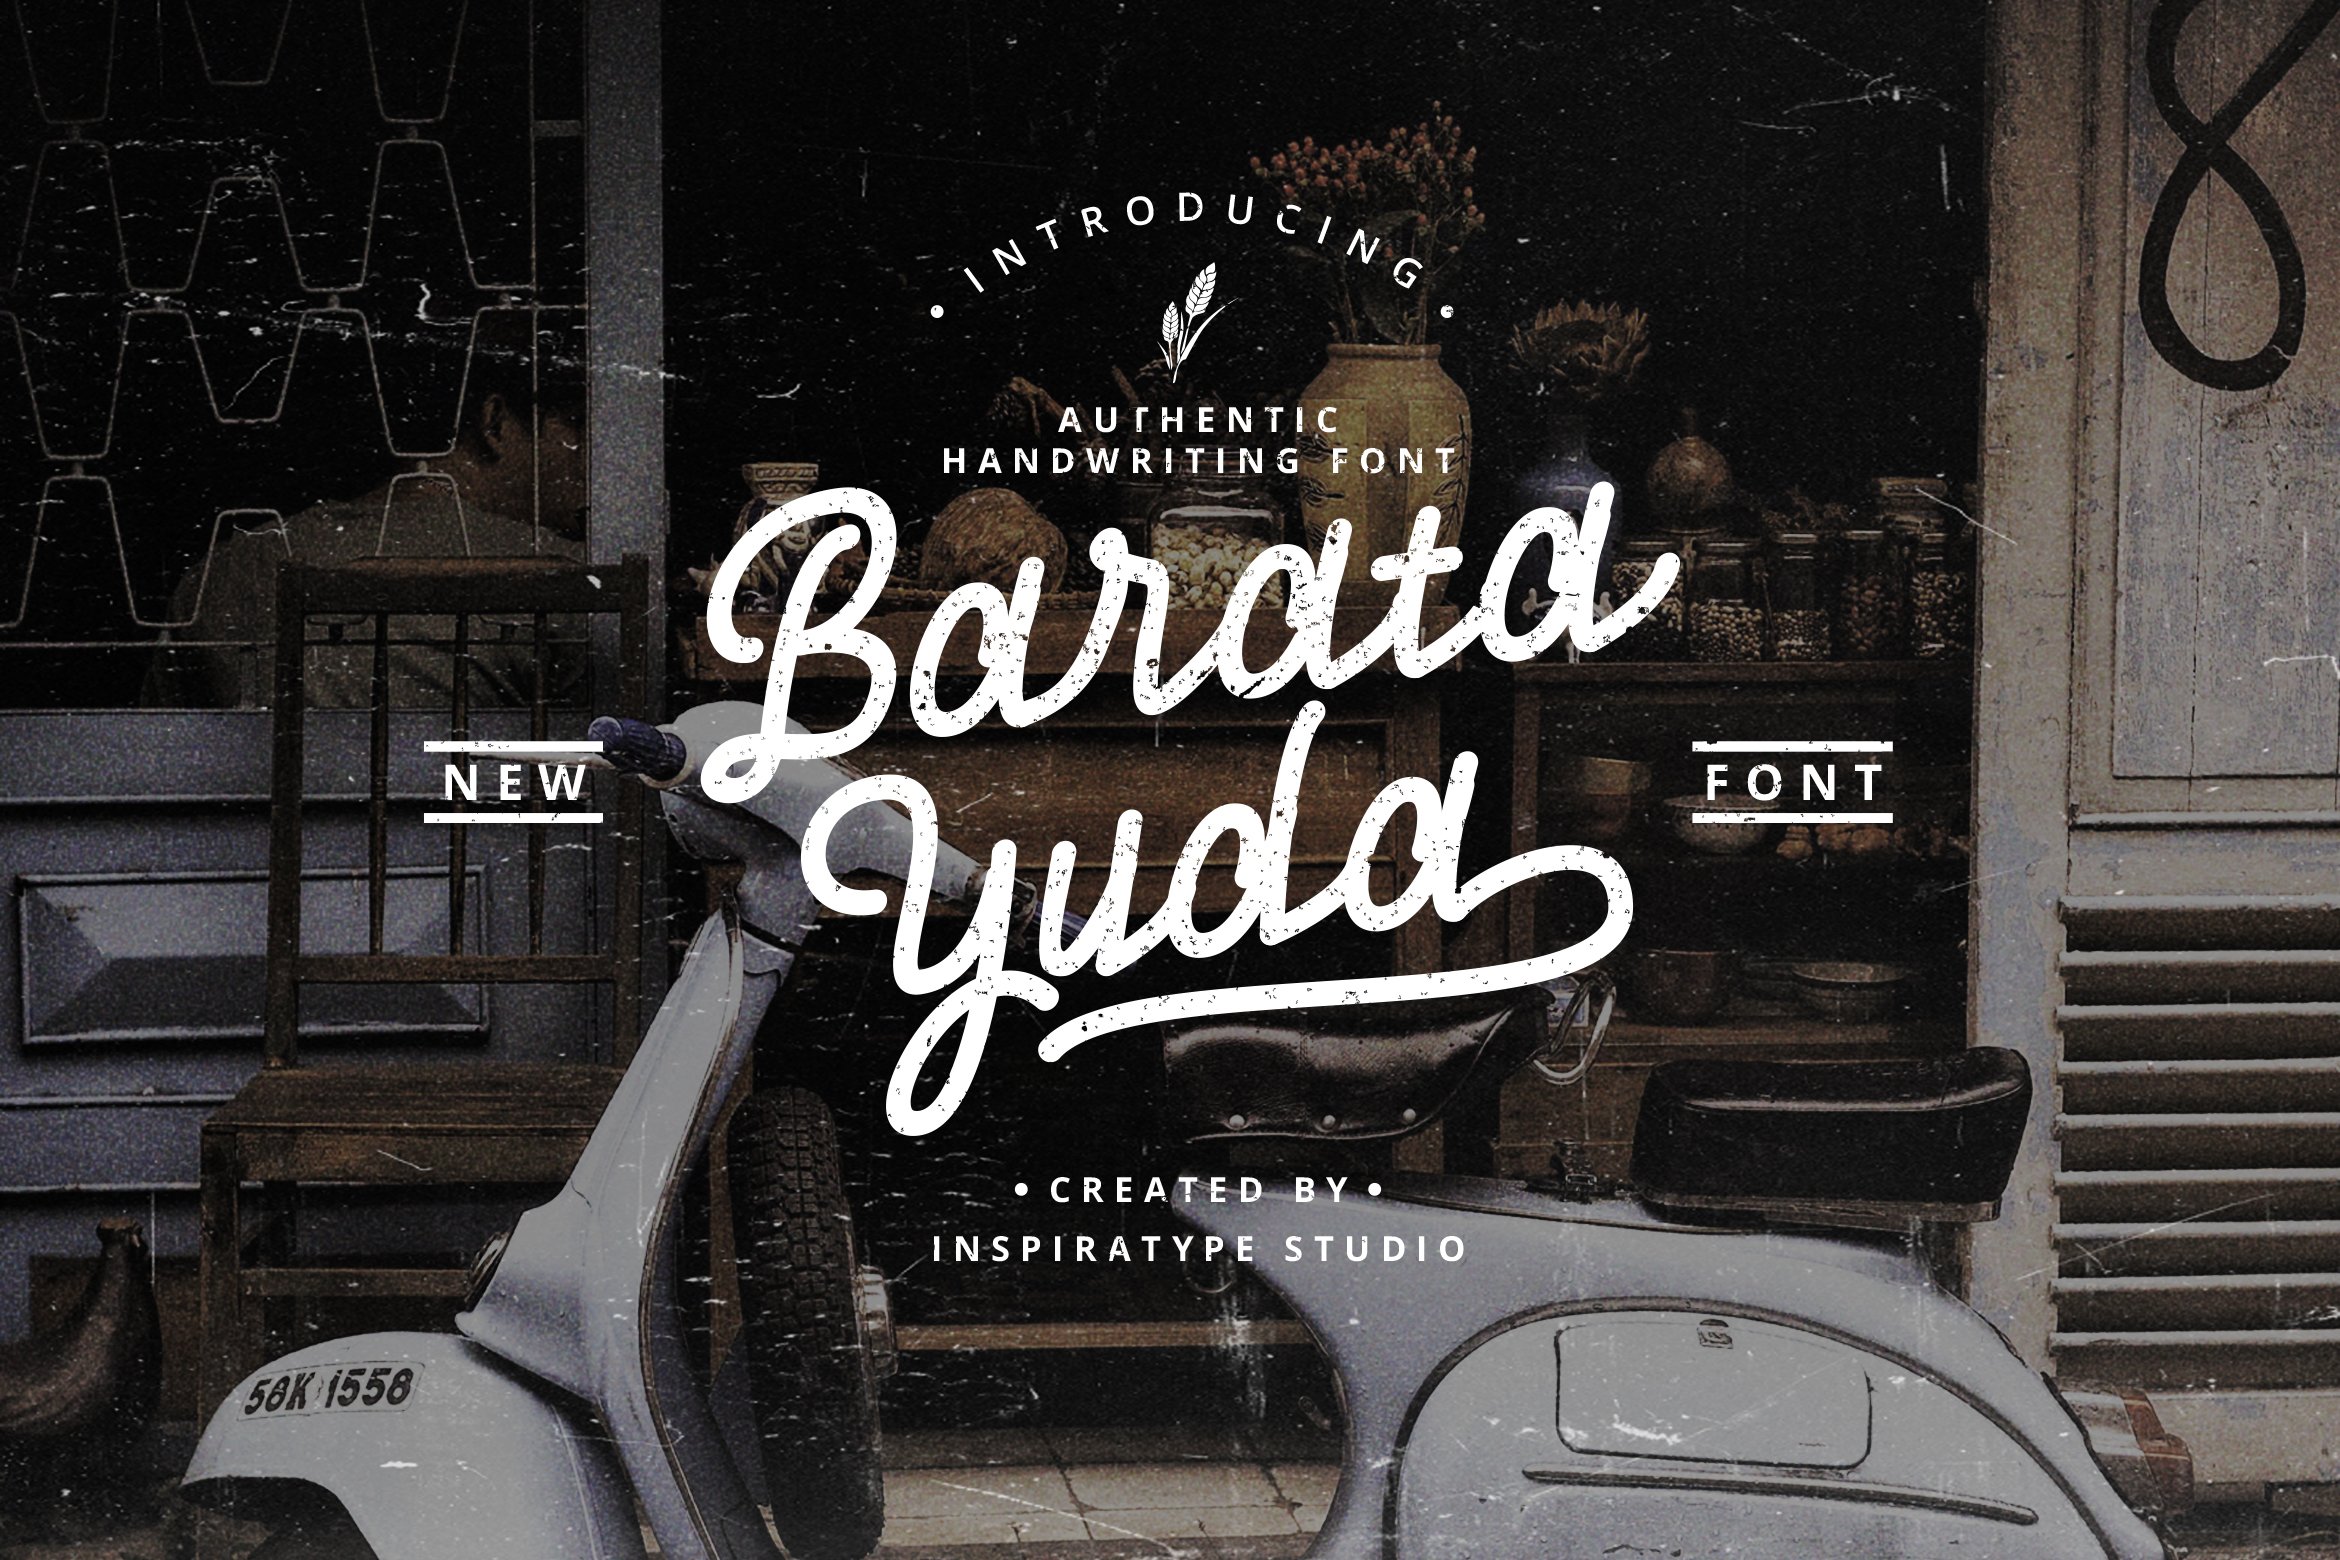 Baratayuda - Authentic Font cover image.